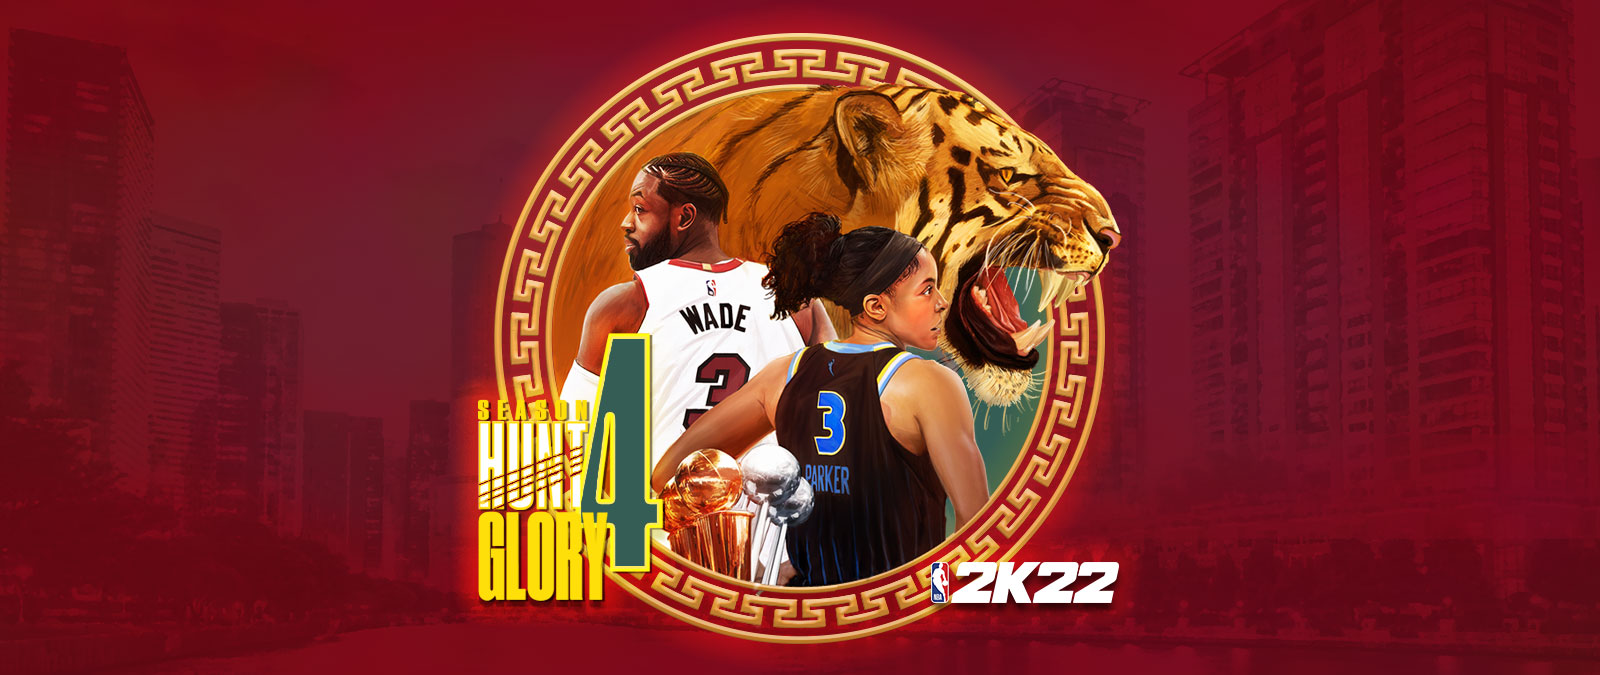 NBA 2K22, Season 4 : Hunt 4 Glory, un élément graphique circulaire déposé sur un arrière-plan urbain dépeignant un tigre grognant ainsi que Dwayne Wade et Candace Parker vus de dos. 